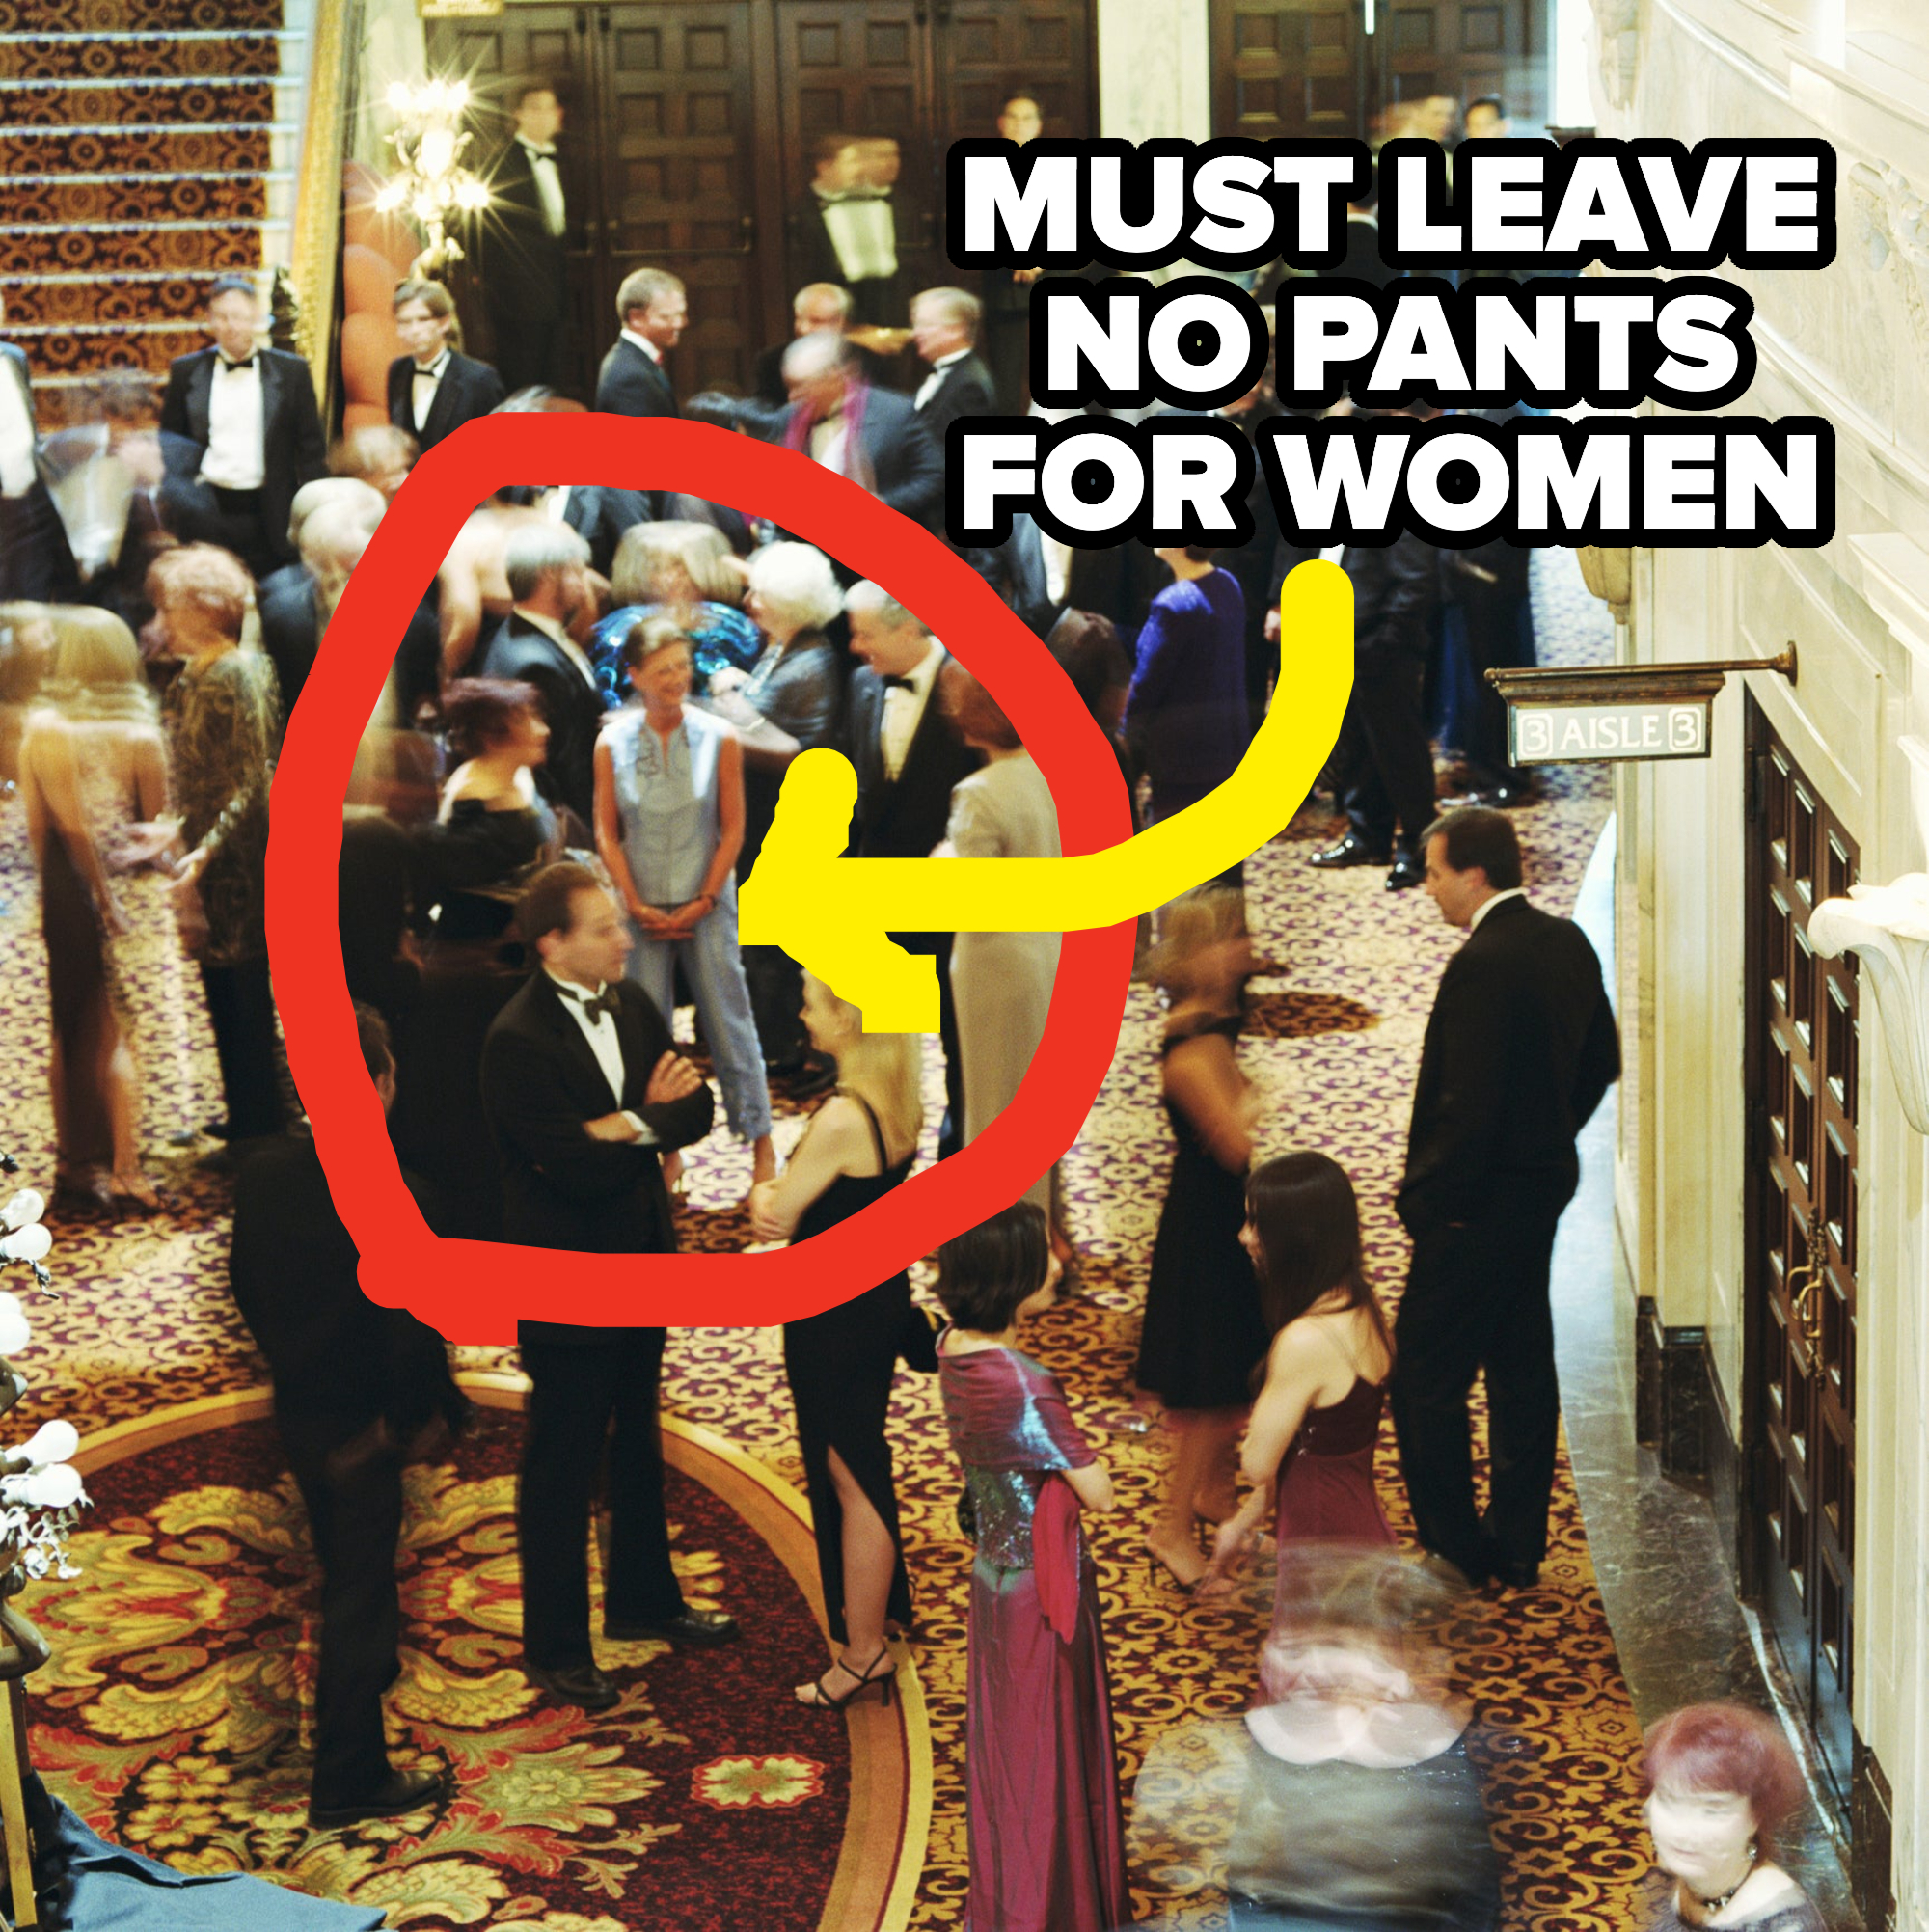 &quot;Must leave no pants for women&quot;